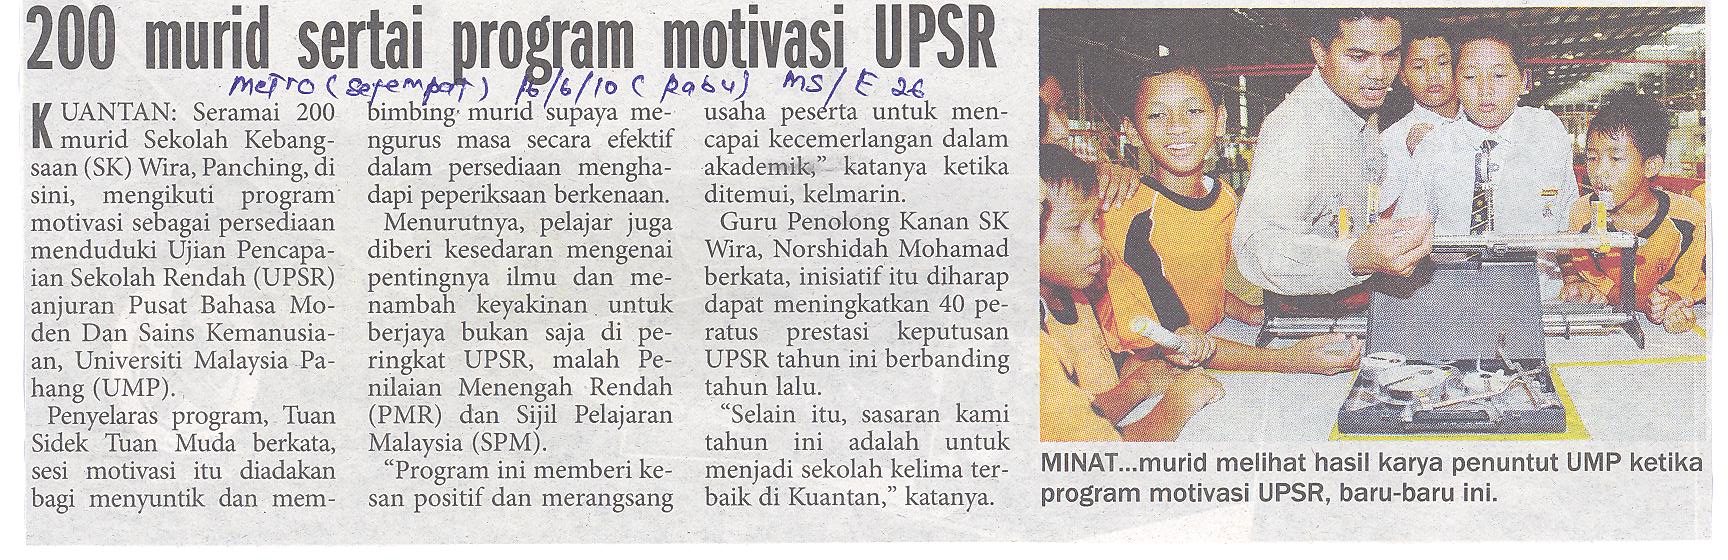 200 Murid Sertai Program Motivasi UPSR 